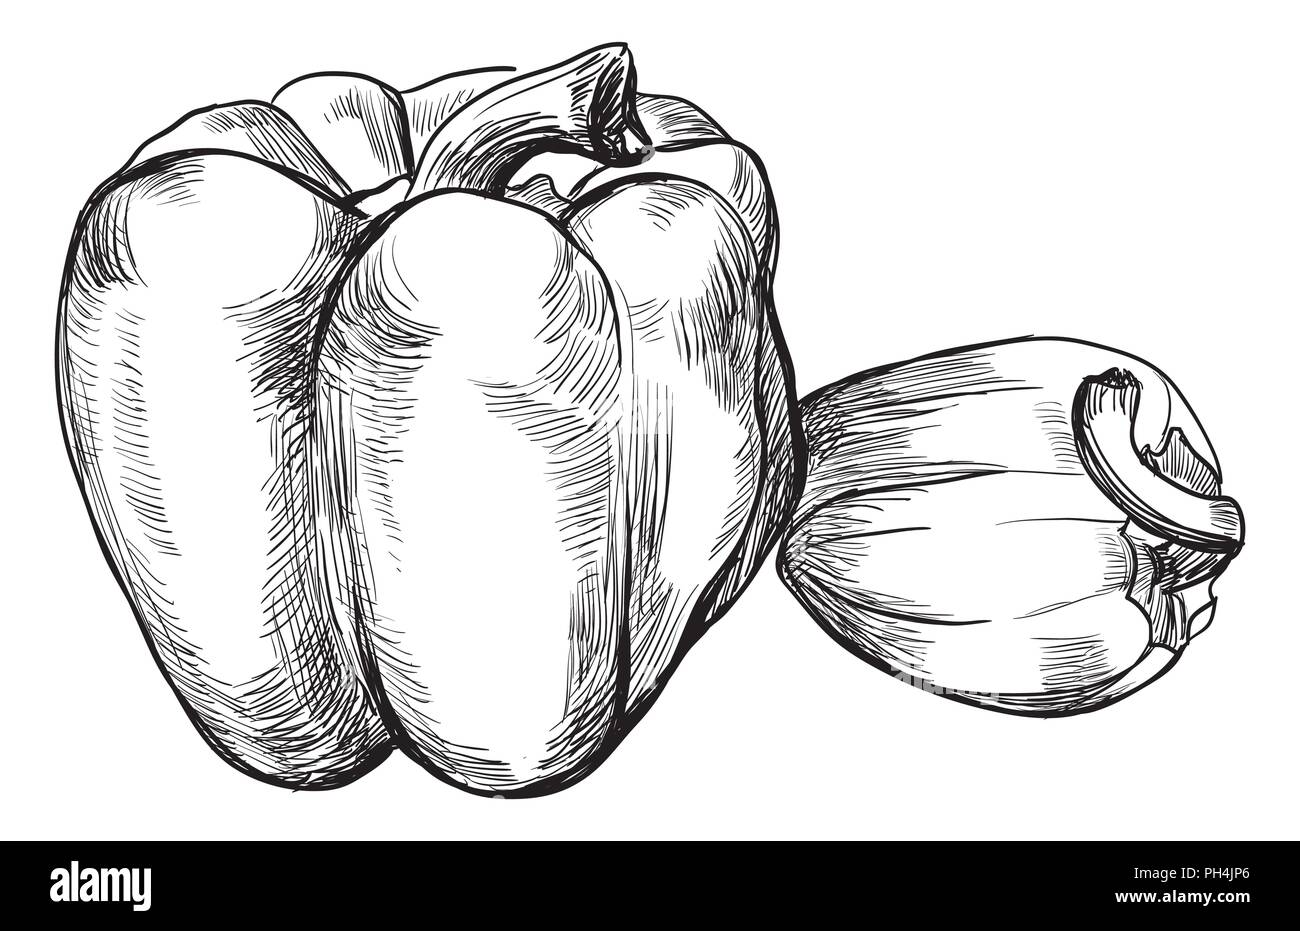 Disegnato a mano-vegetali pepe. Vettore illustrazione monocromatica isolati su sfondo bianco. Illustrazione Vettoriale